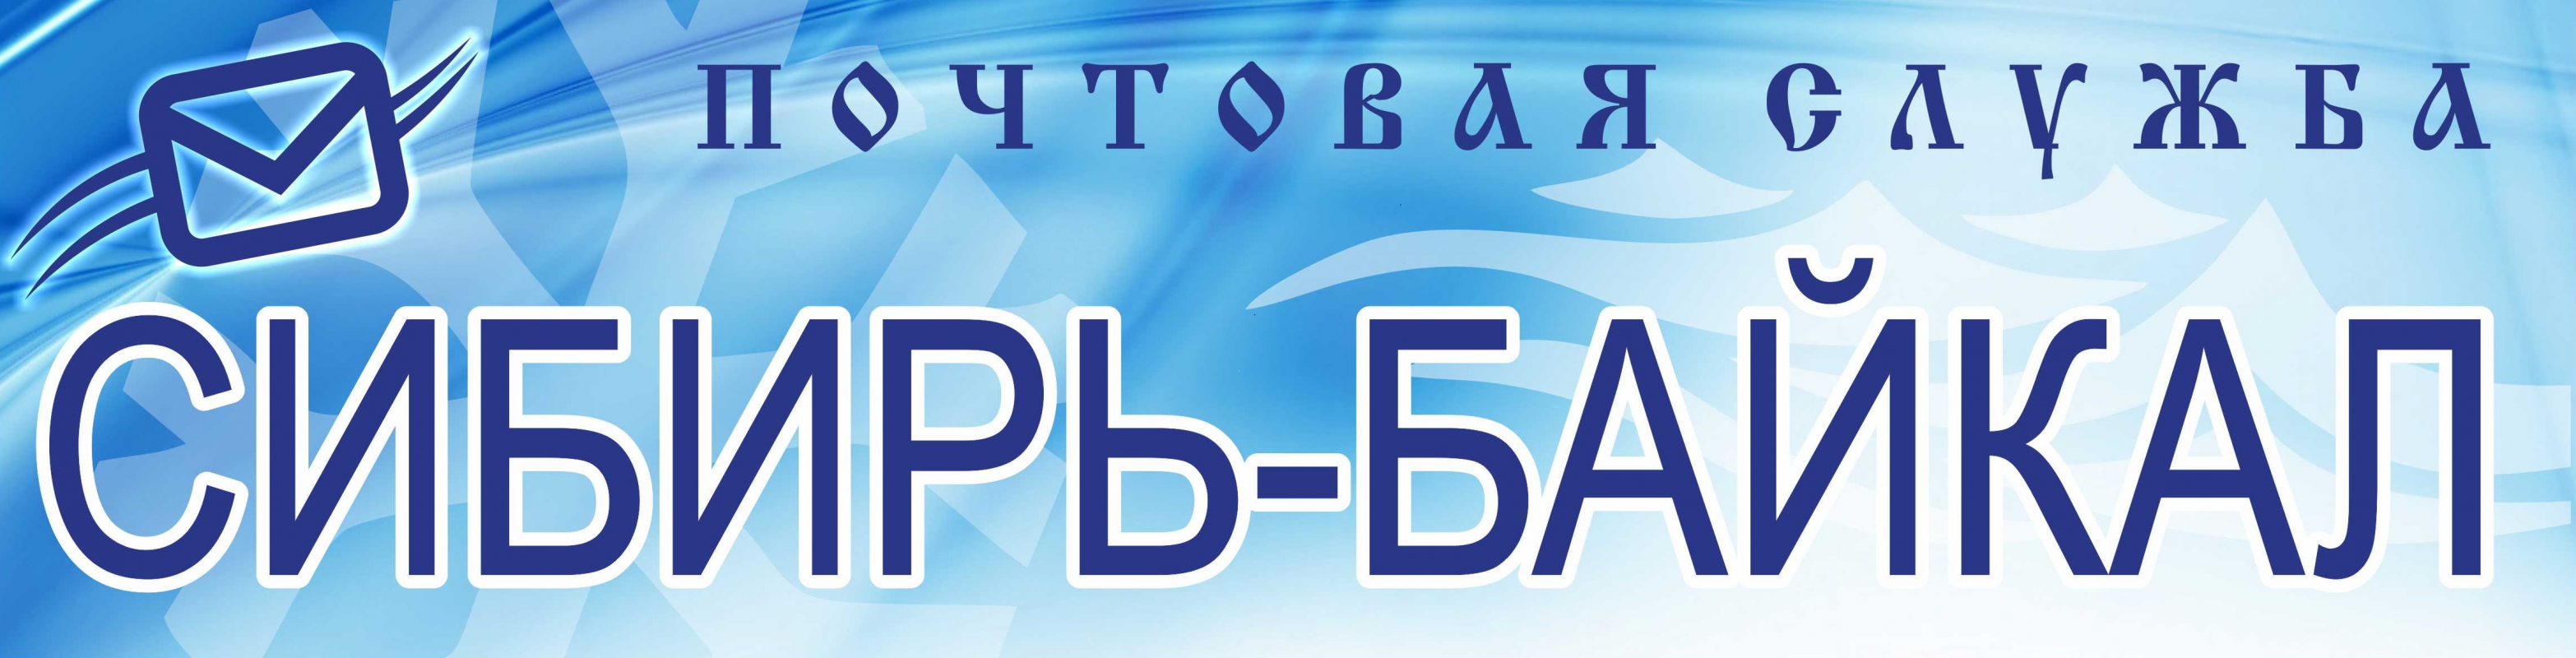 Сибирь-Байкал: отзывы от сотрудников и партнеров